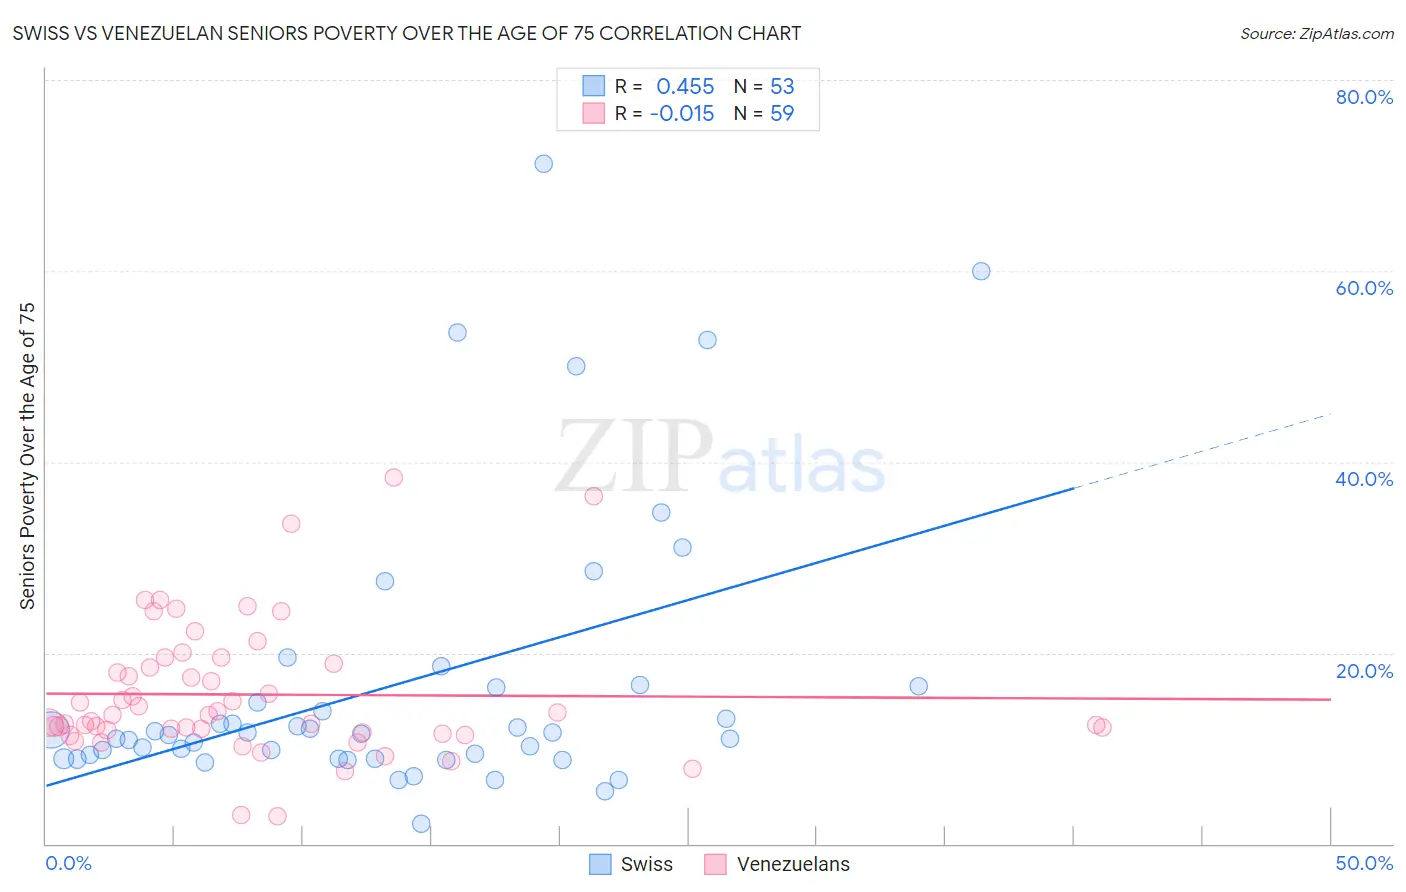 Swiss vs Venezuelan Seniors Poverty Over the Age of 75